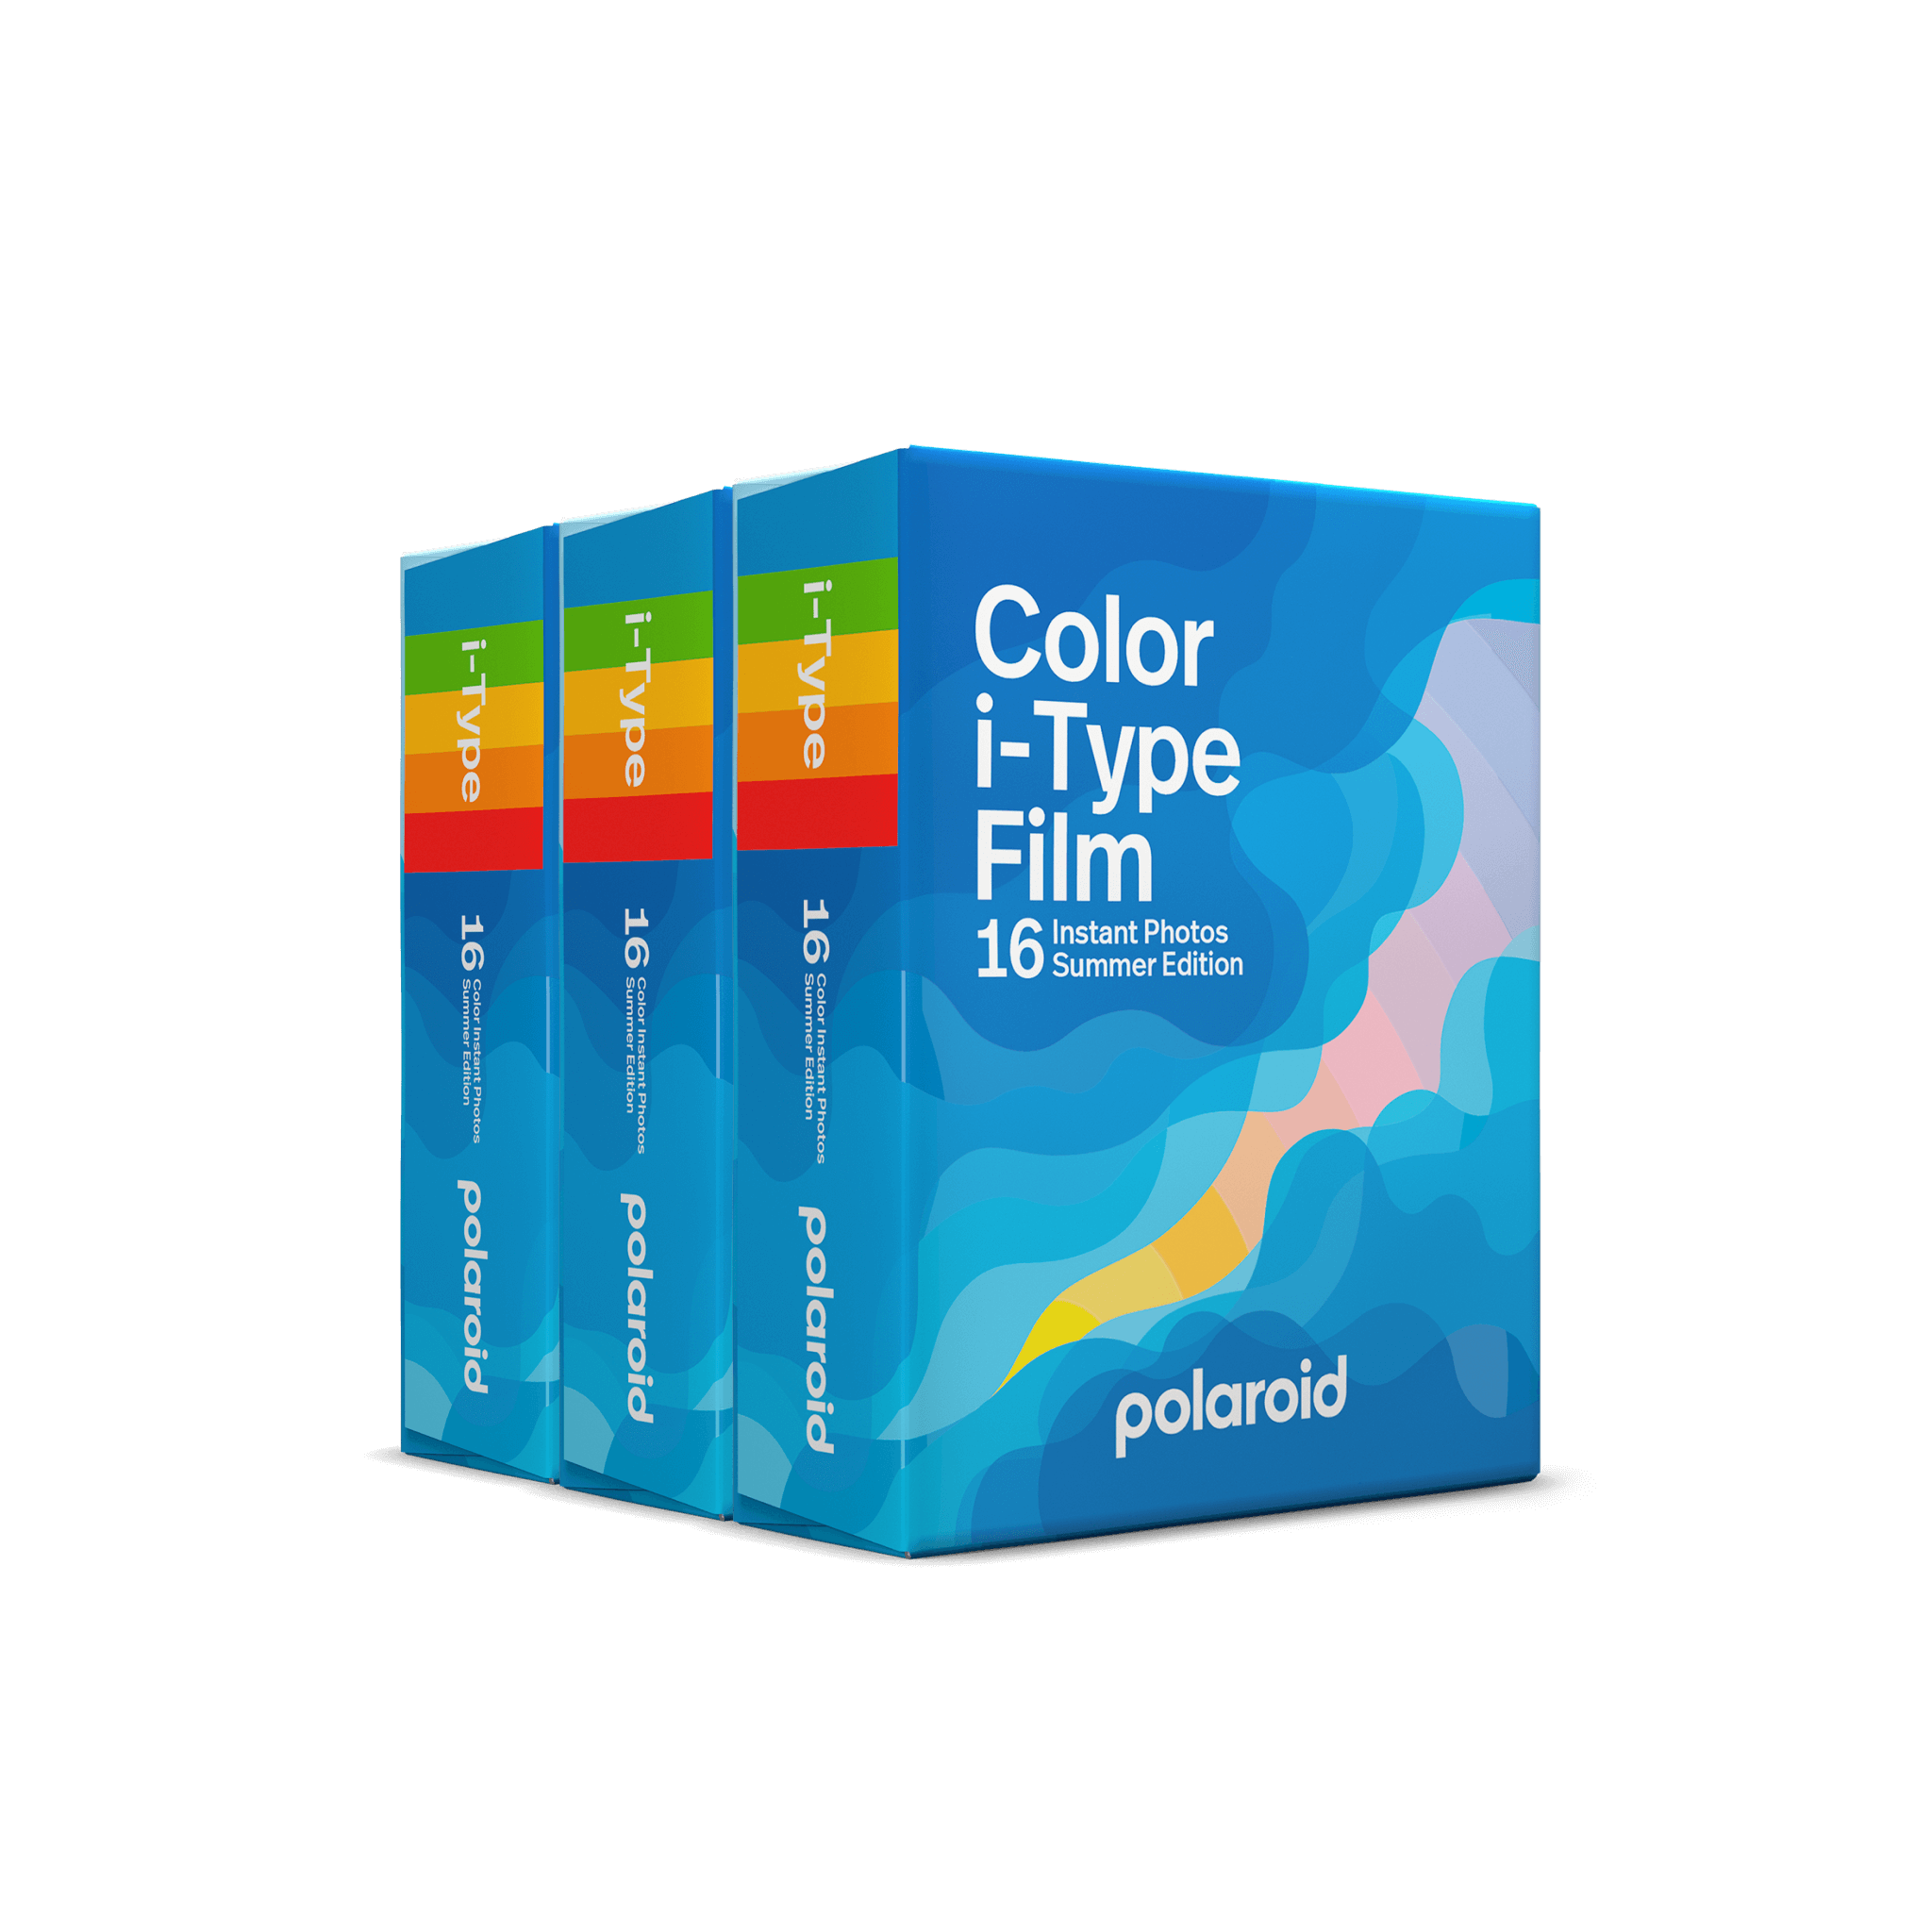 Polaroid Originals Color i-Type Instant Film 4833 B&H Photo Video